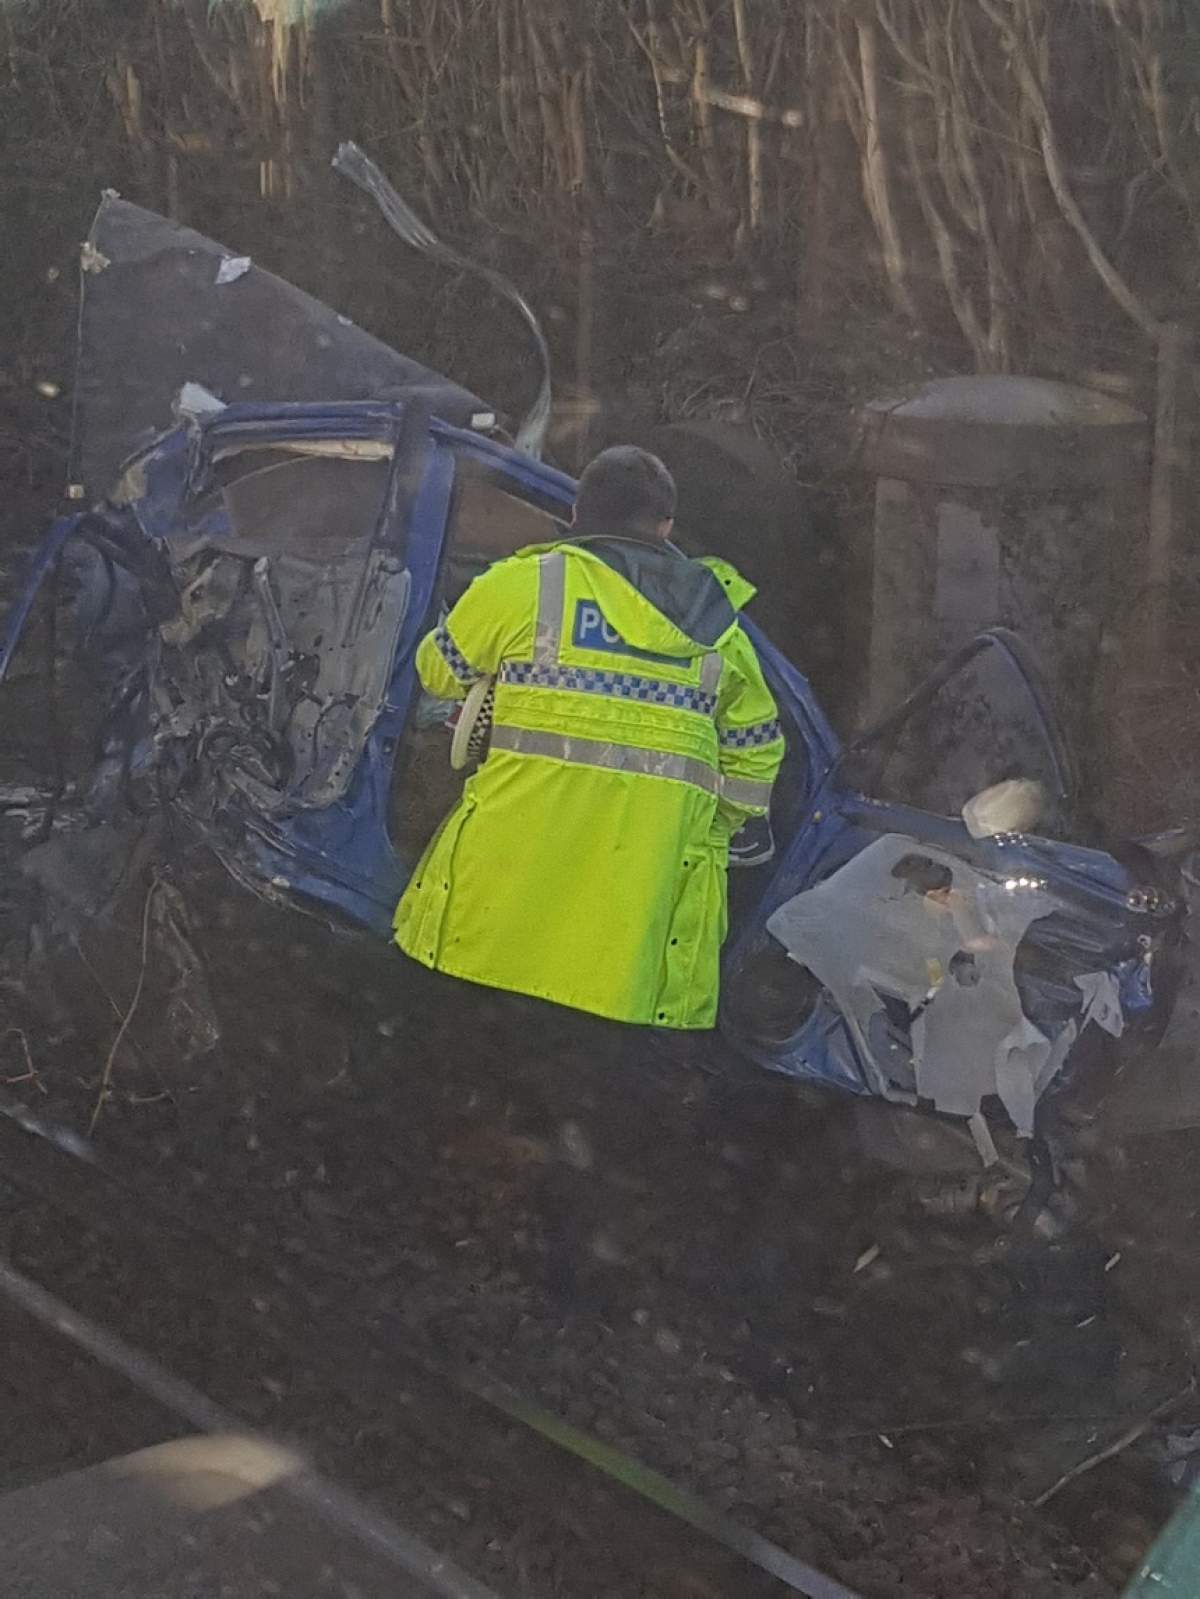 FOTO / Accident feroviar cumplit! Un tren a rupt în două o maşină. Doi oameni au murit